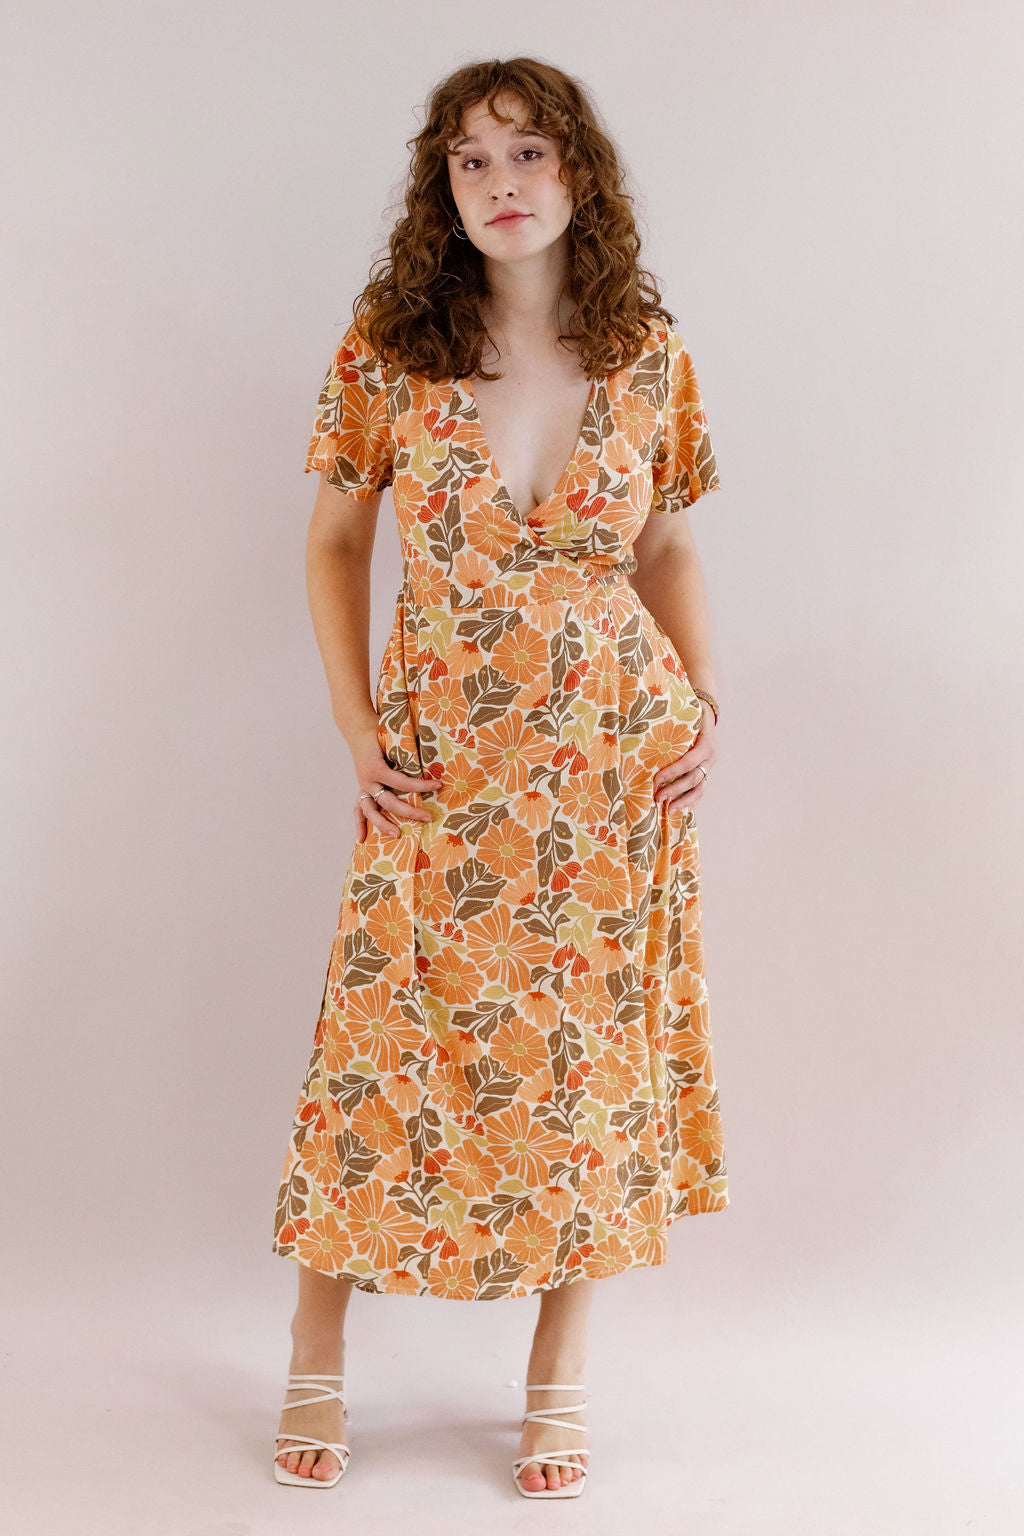 Marine Layer | Emlyn Midi Dress | Warm Mexican Floral - Poppy and Stella